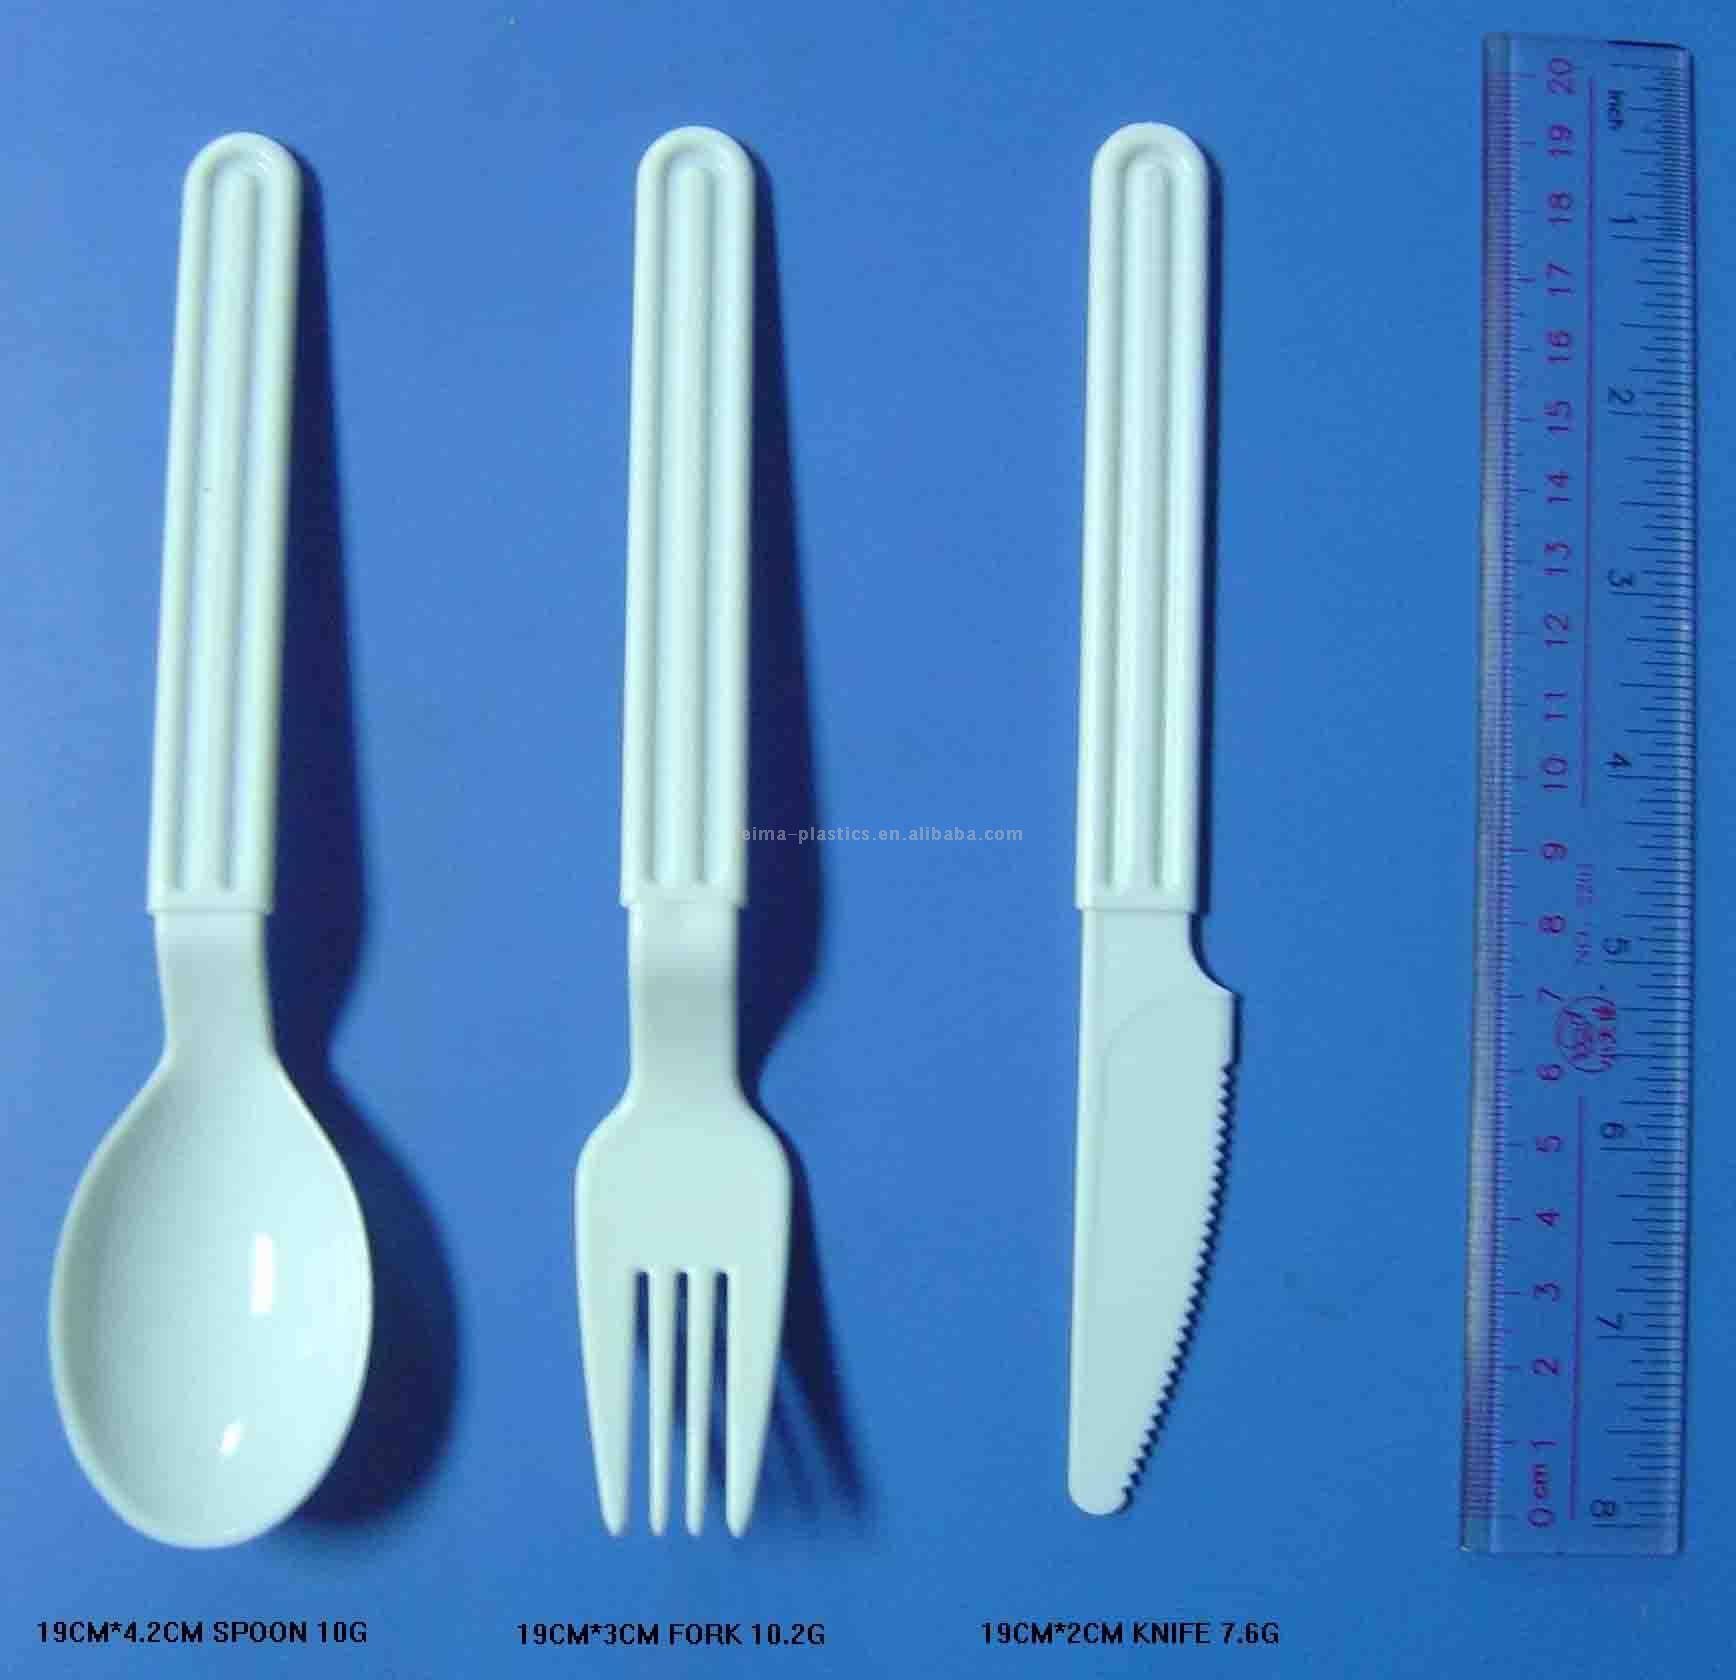  P2# Plastic Cutlery (P2 # пластиковые столовые приборы)